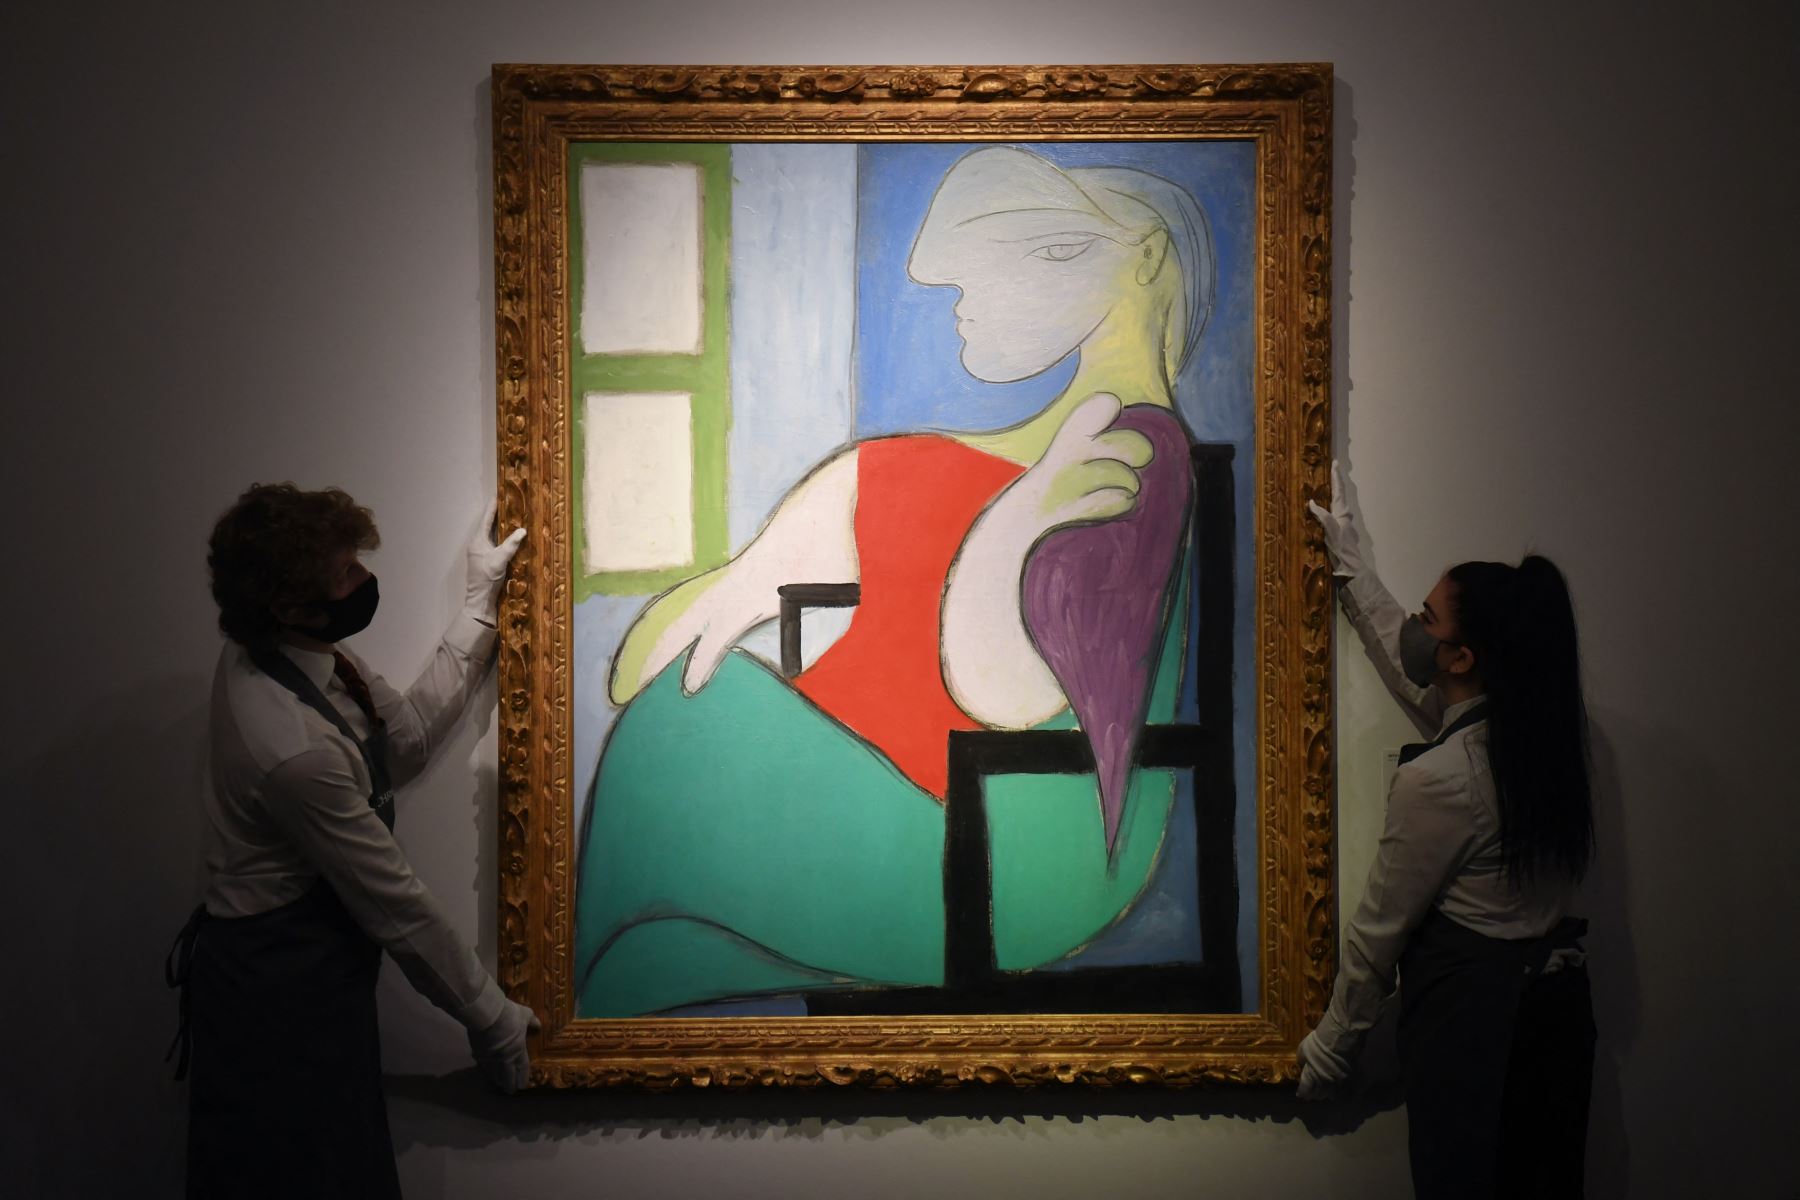 La pieza, de casi metro y medio de alto por 1.14 metros de ancho, está considerada como una obra excepcional de Picasso. Foto: AFP